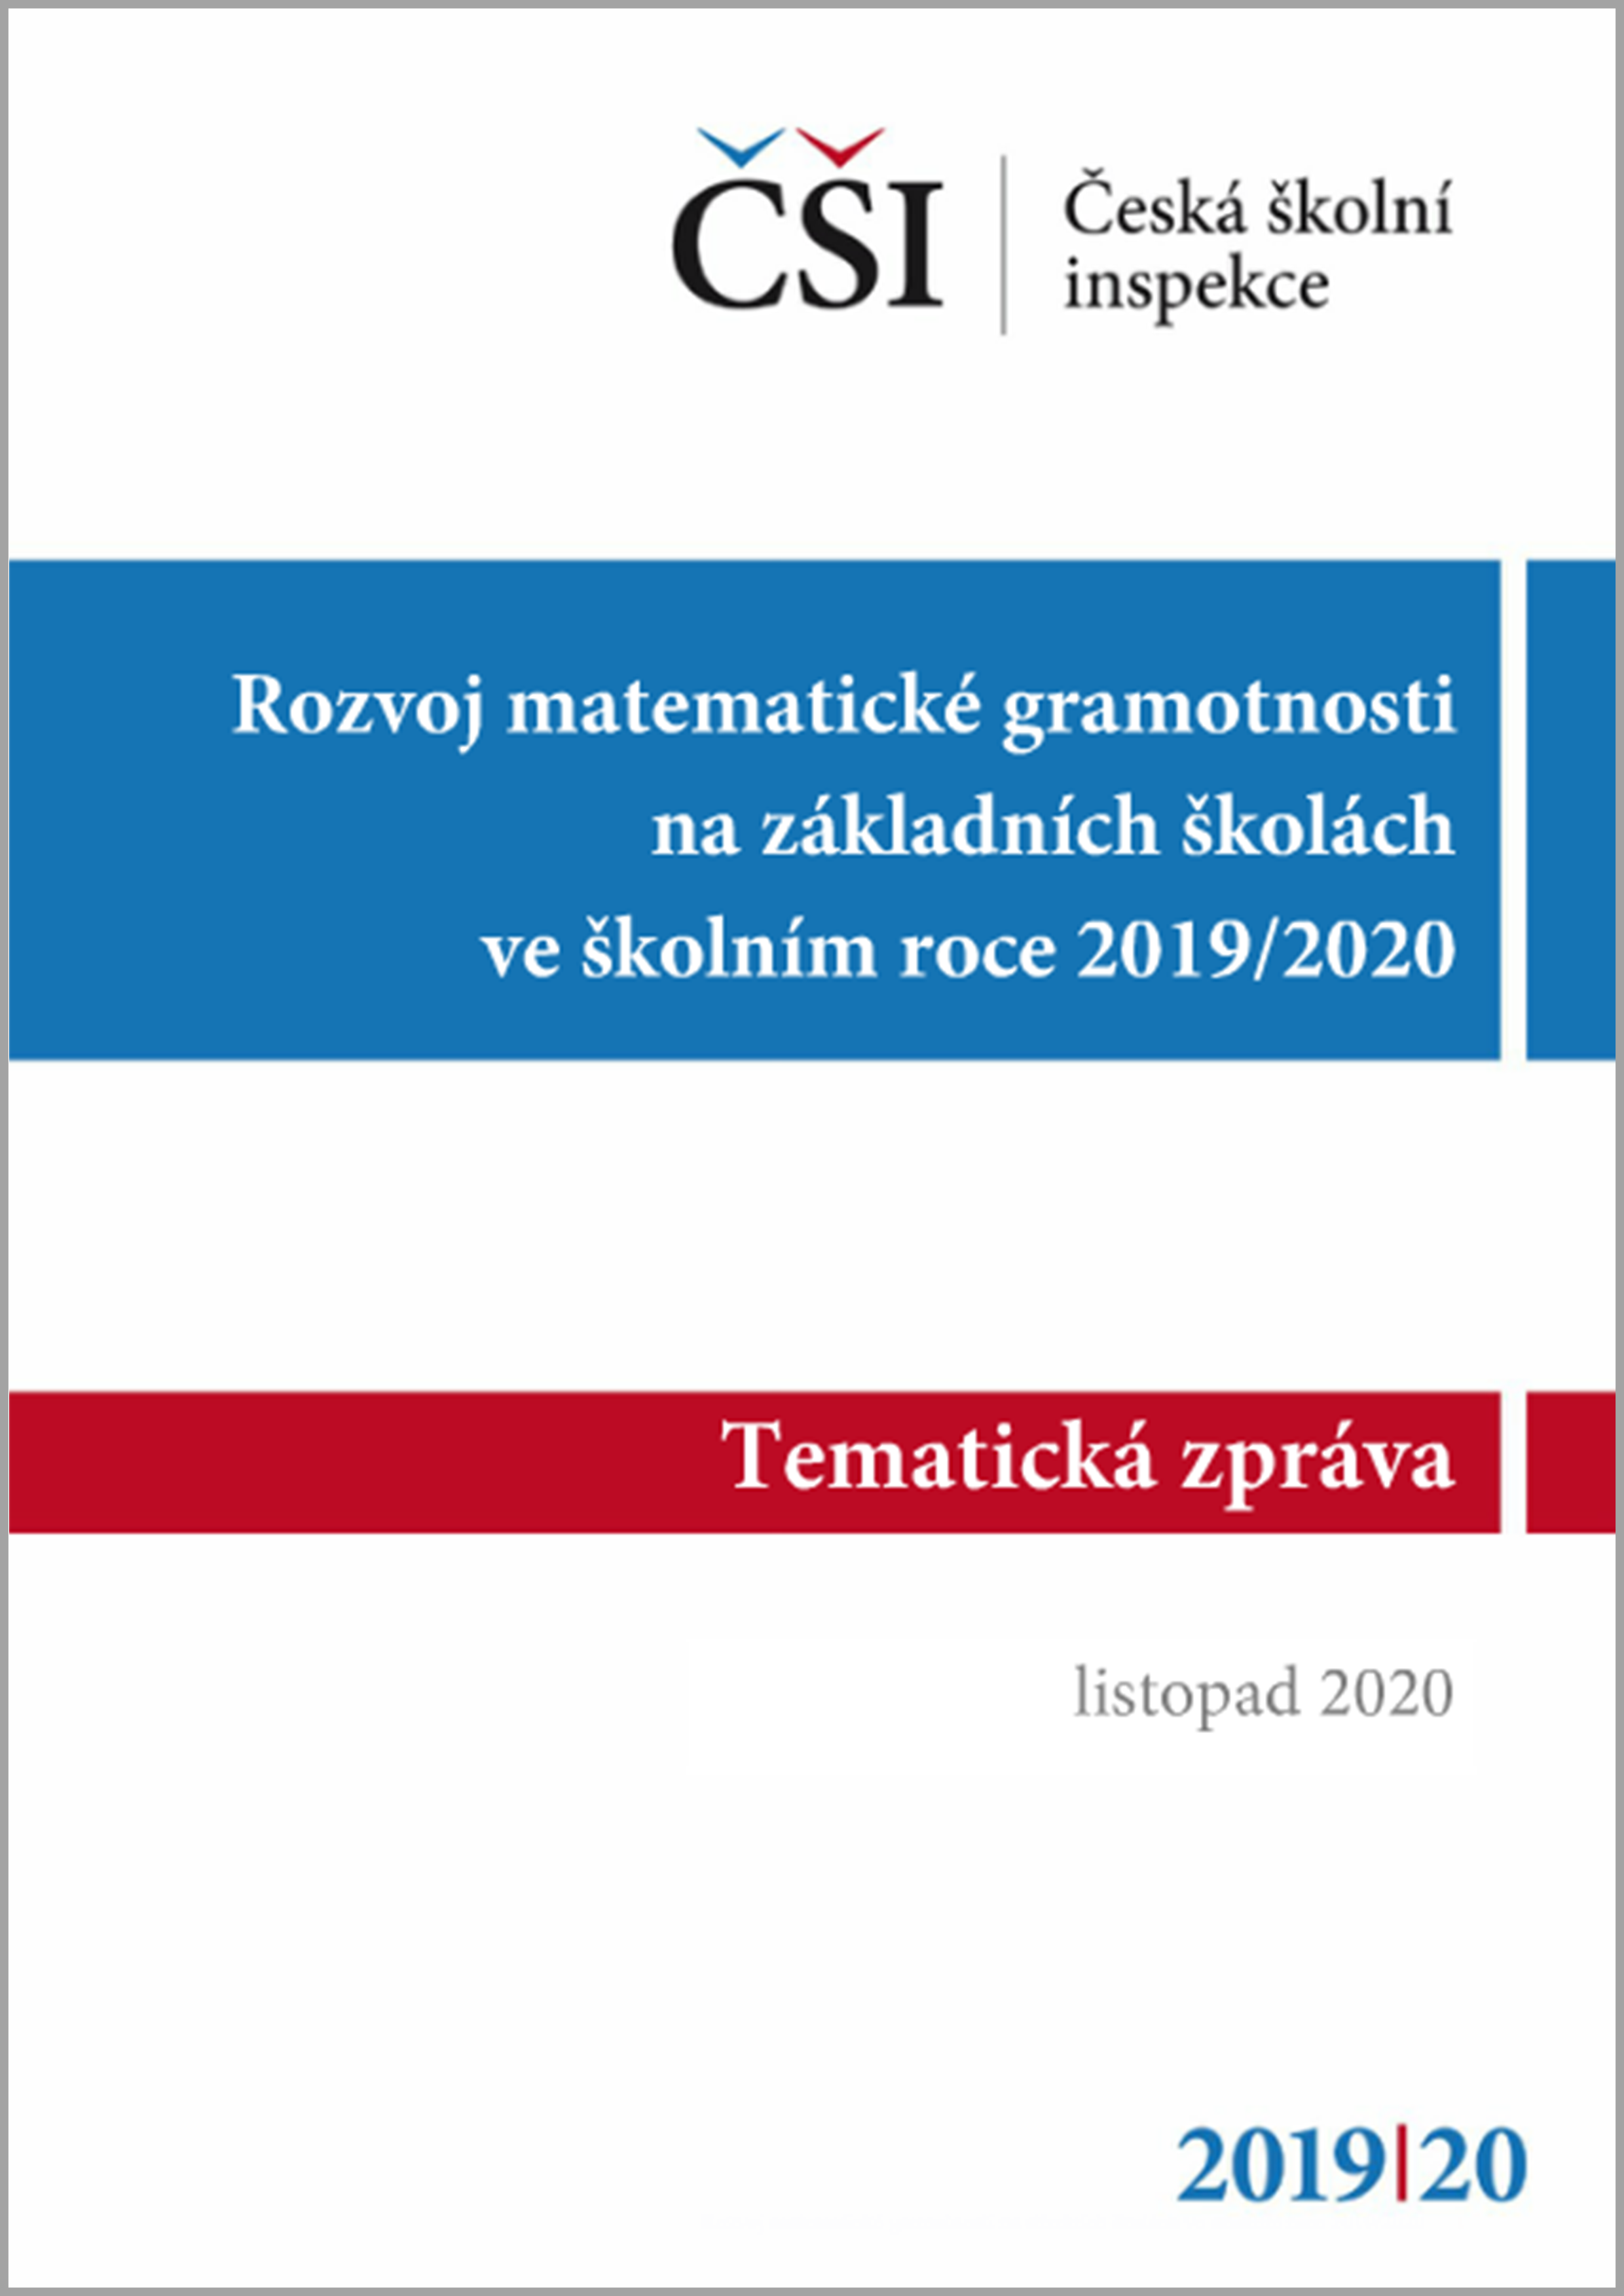 Tematická zpráva - Rozvoj matematické gramotnosti na základních školách ve školním roce 2019/2020